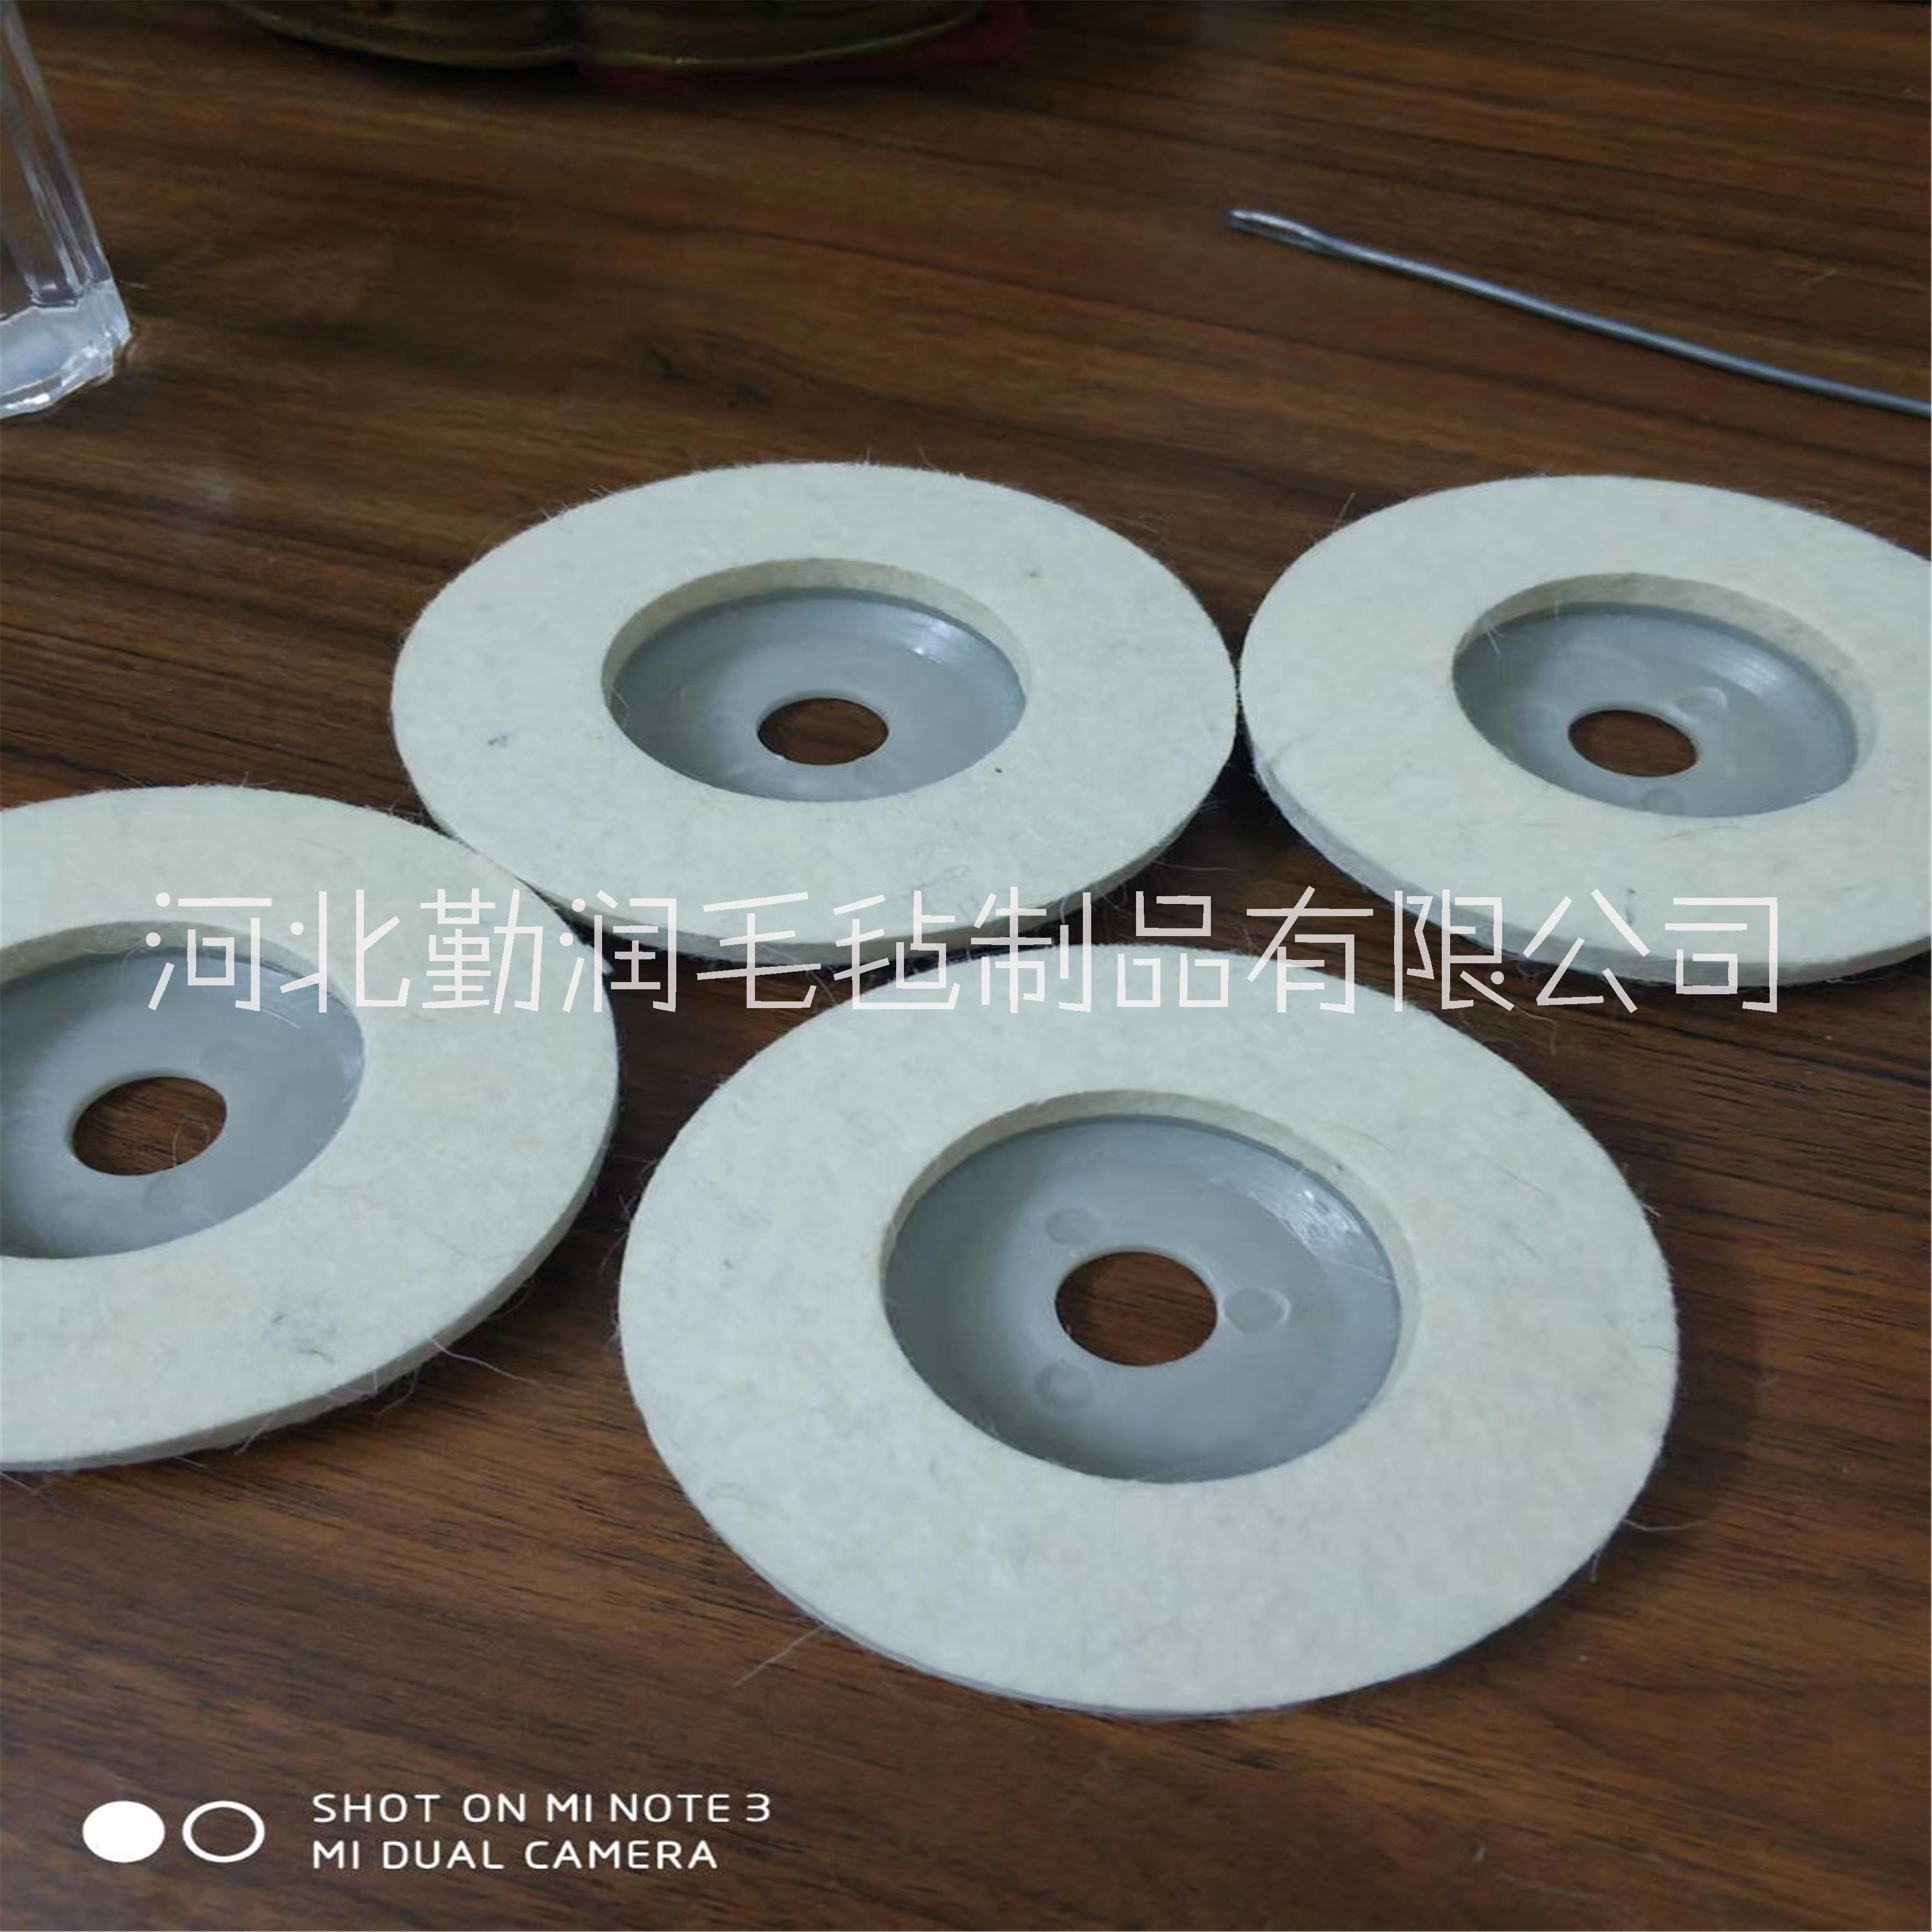 杭州勤润毛毡厂专业生产抛光毛毡轮 耐磨羊毛轮定做 上海优质抛光盘定做 抛光轮